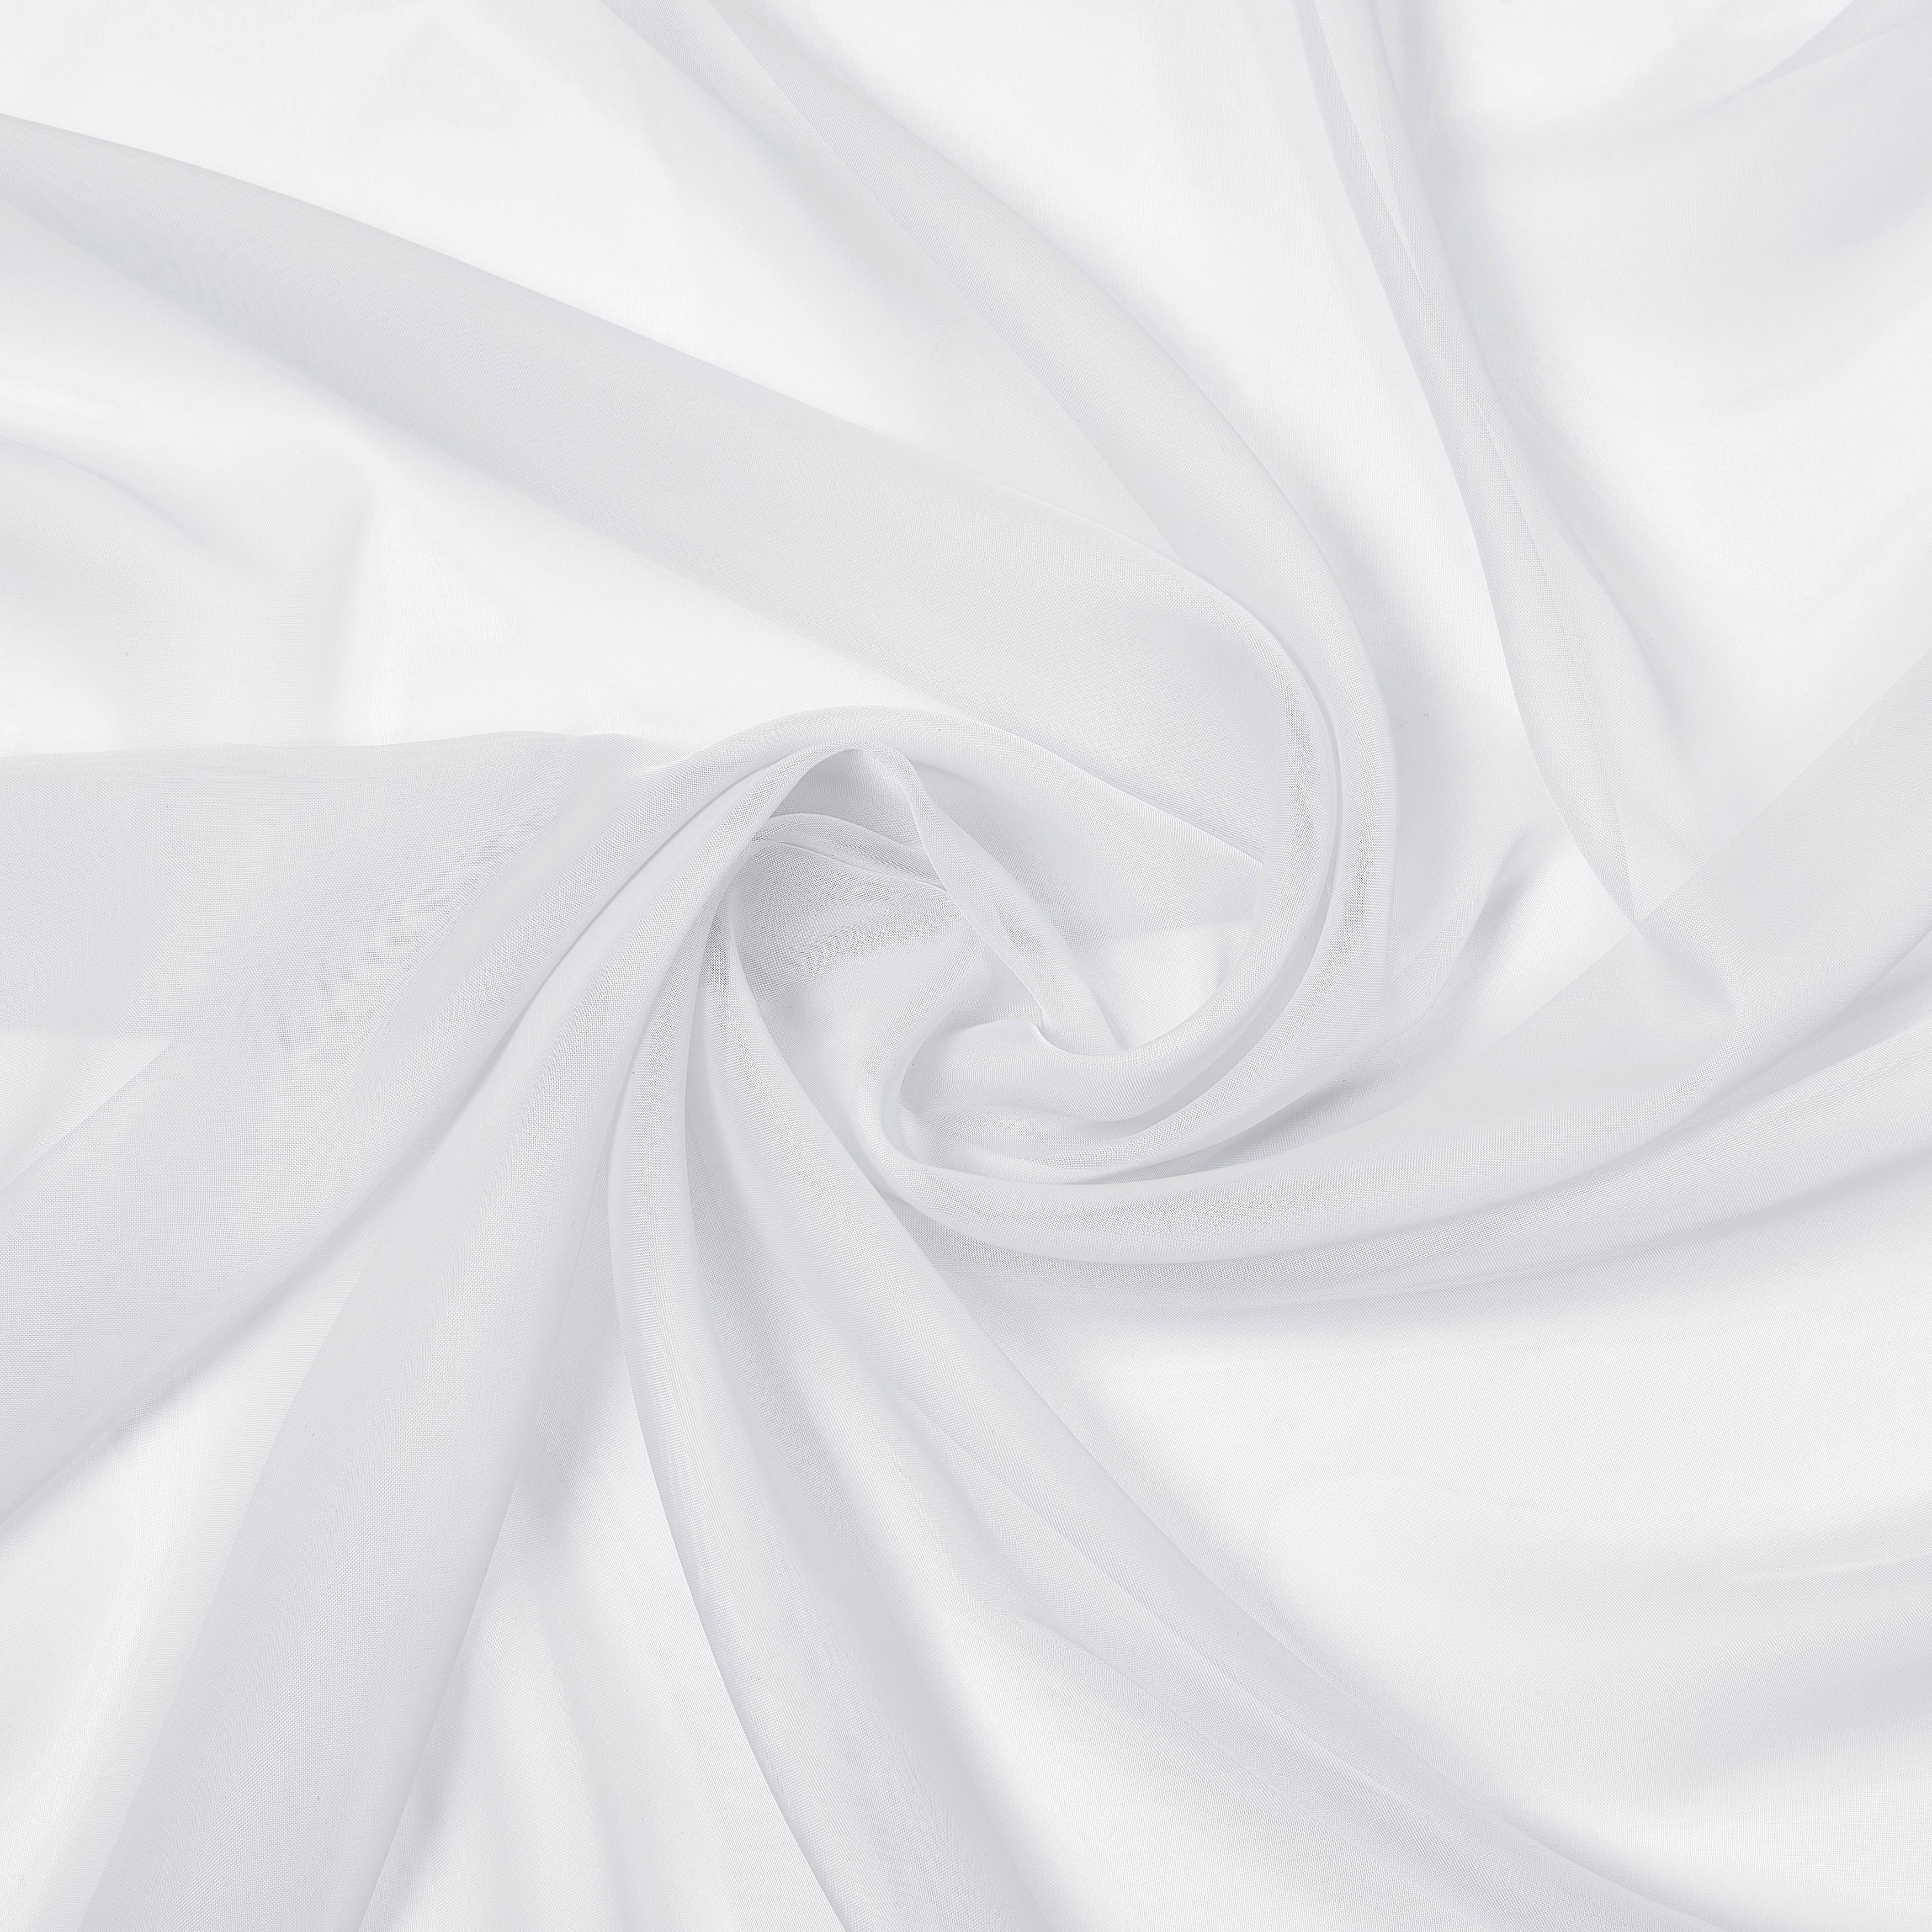 Schlaufenvorhang Hanna in Weiß, 2 Stk. - Weiß, Textil (140/245cm) - Based